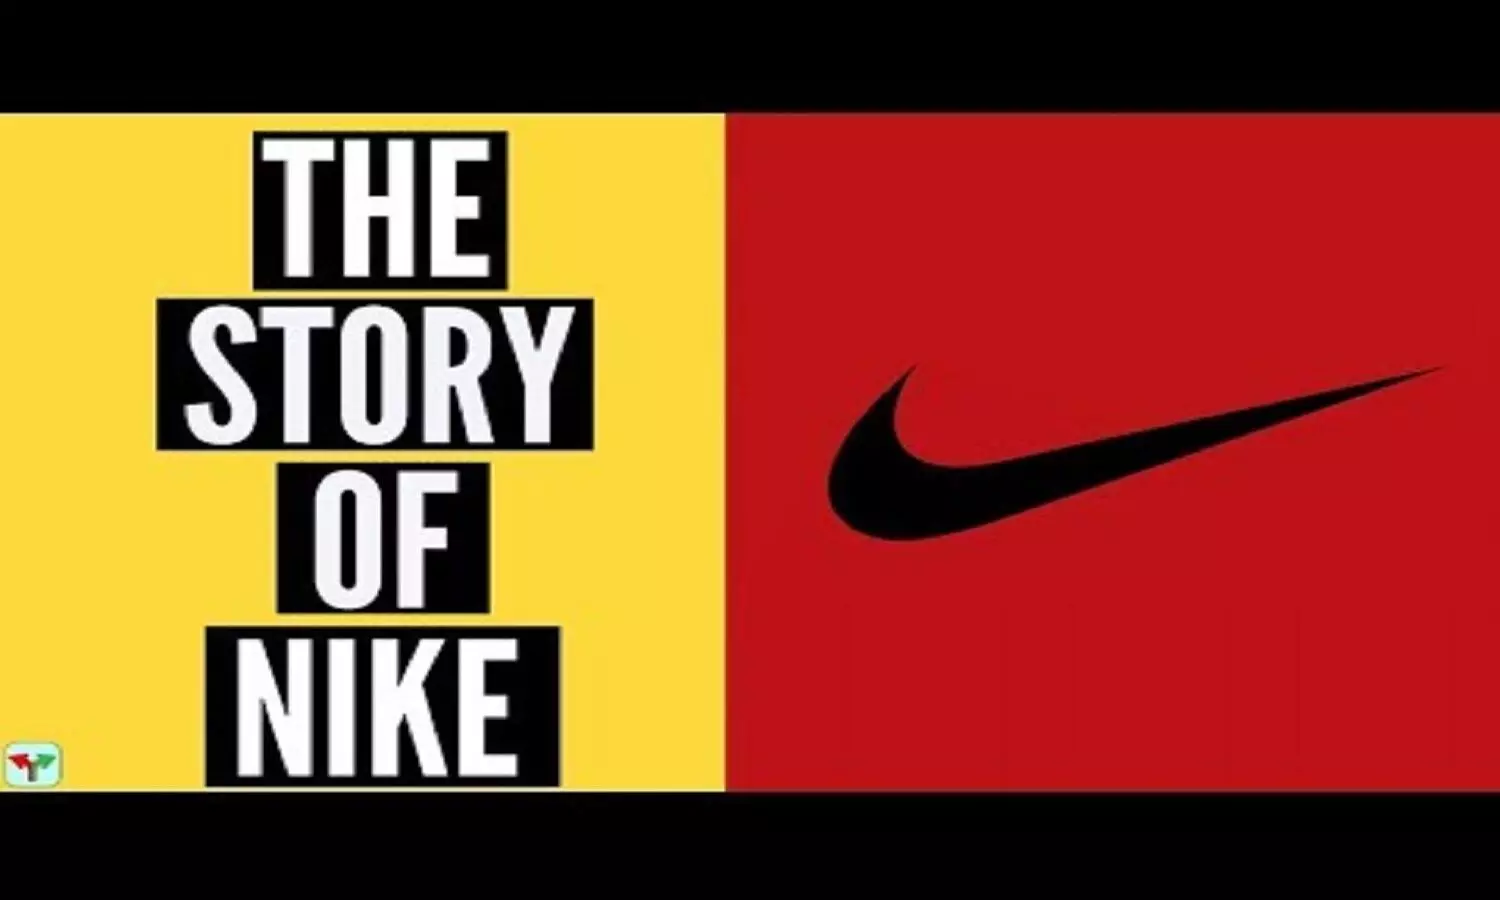 Story Of Nike: दो लोगों के हत्यारे के मुंह से निकले शब्द से बनी Nike की Tagline